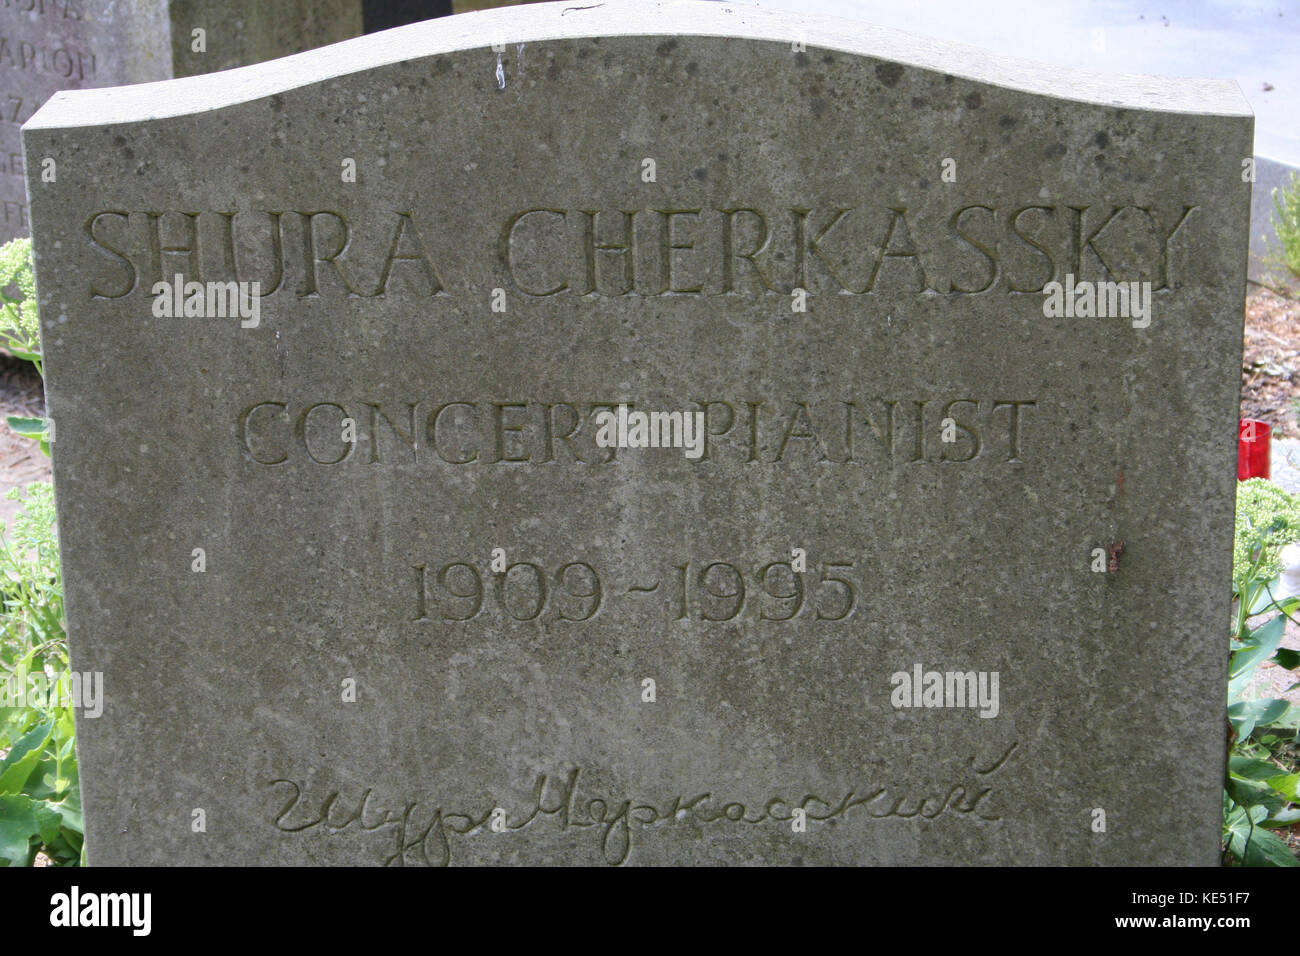 Shura Cherkassky 's lapide presso il cimitero di Highgate 7 Ottobre 1909 - 27 dicembre 1995 Foto Stock